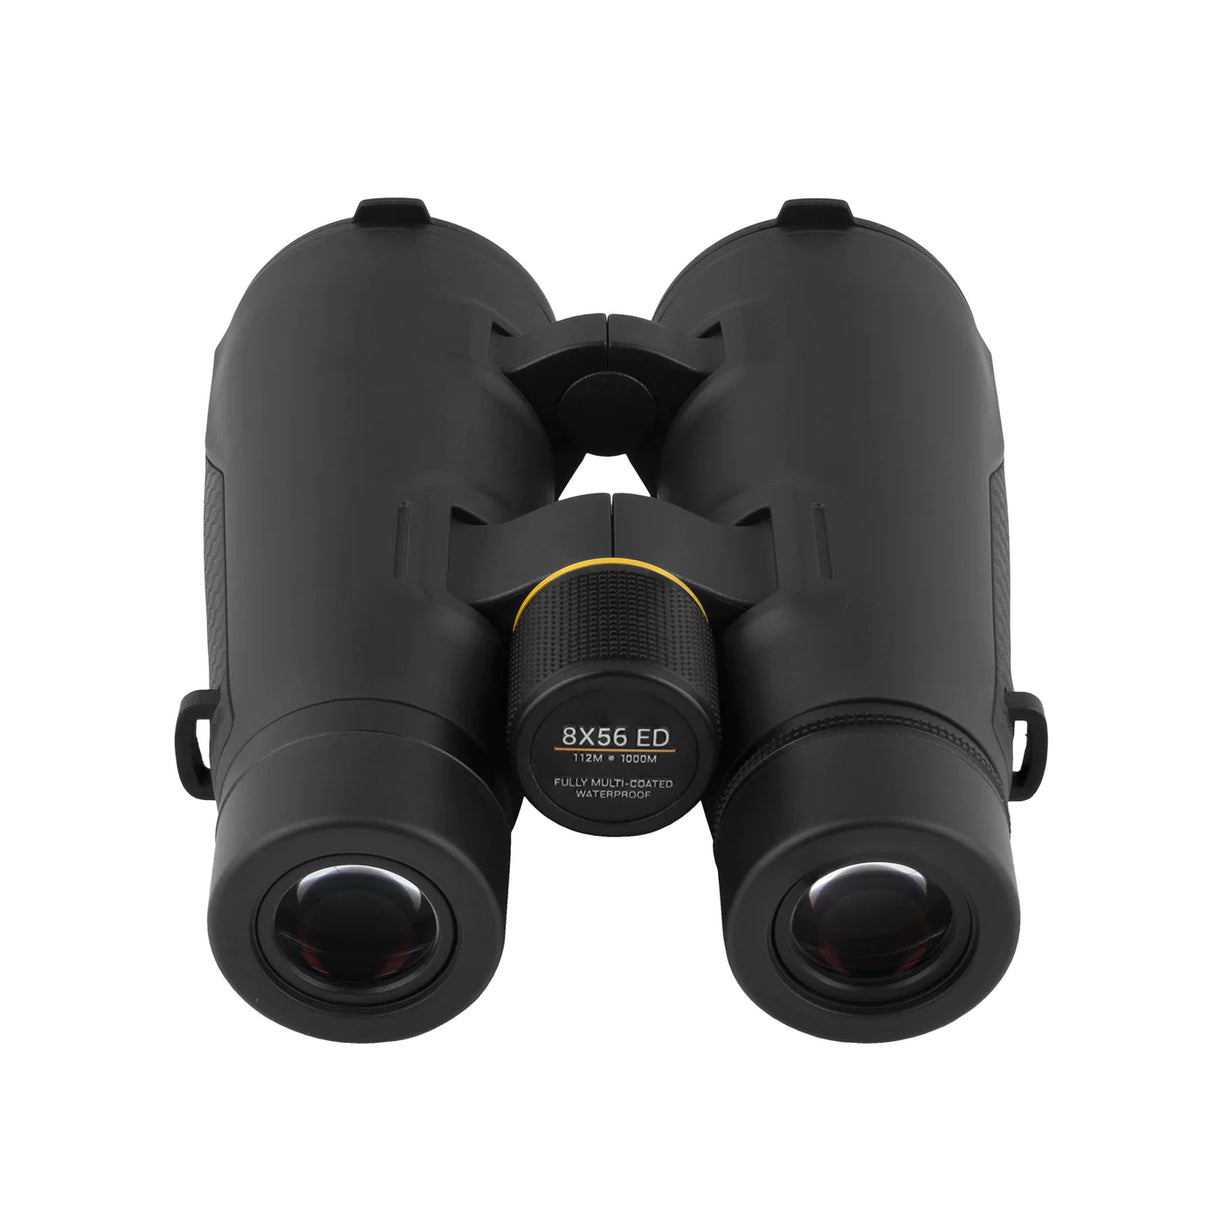 Explore Scientific G600 ED Series 8x56 Binoculars | ES-20856 | 811803035003